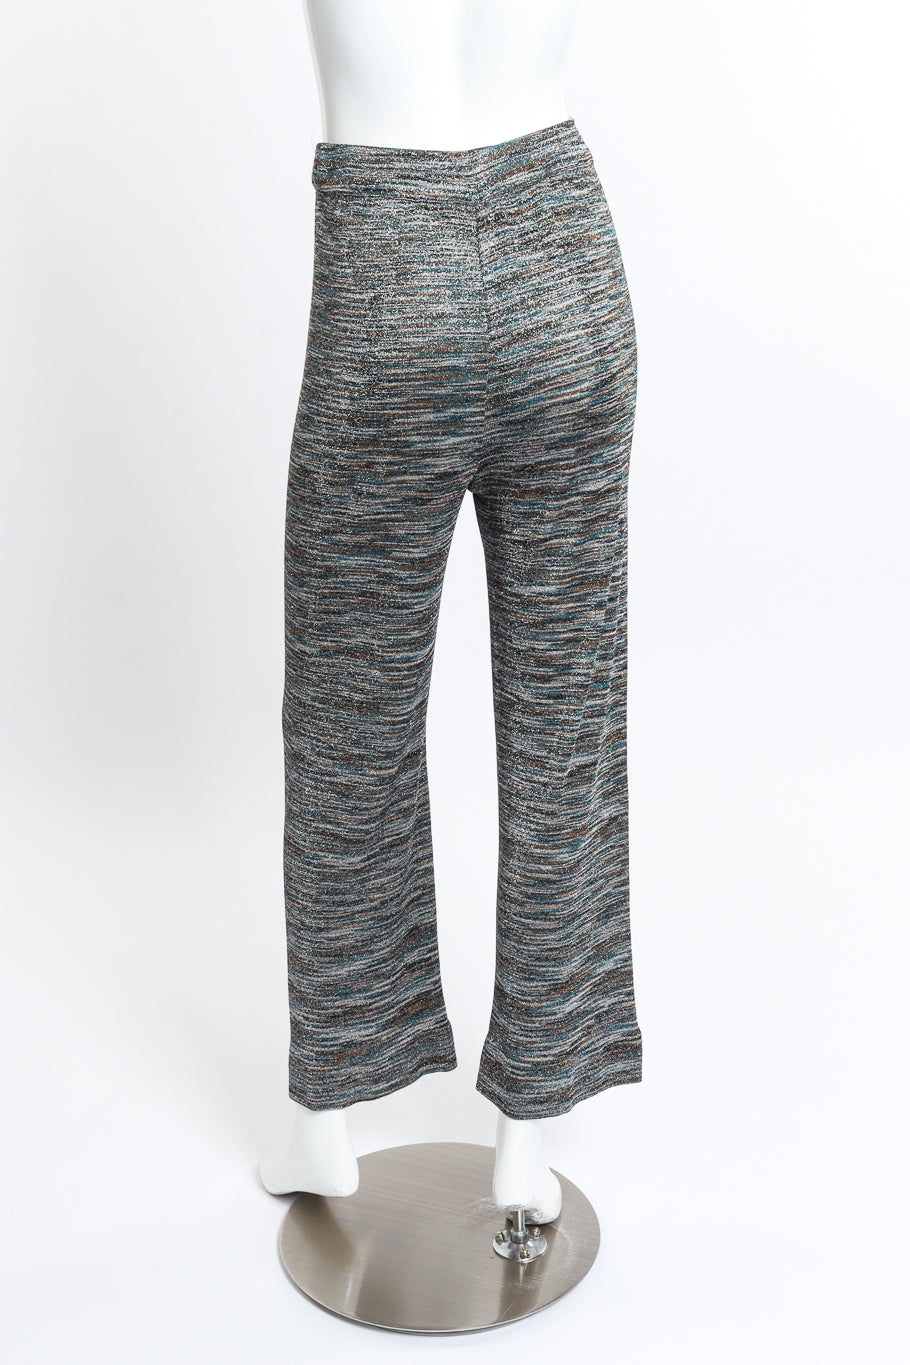 Striped Crop Top & Trouser Set trouser back on mannequin @RECESS LA